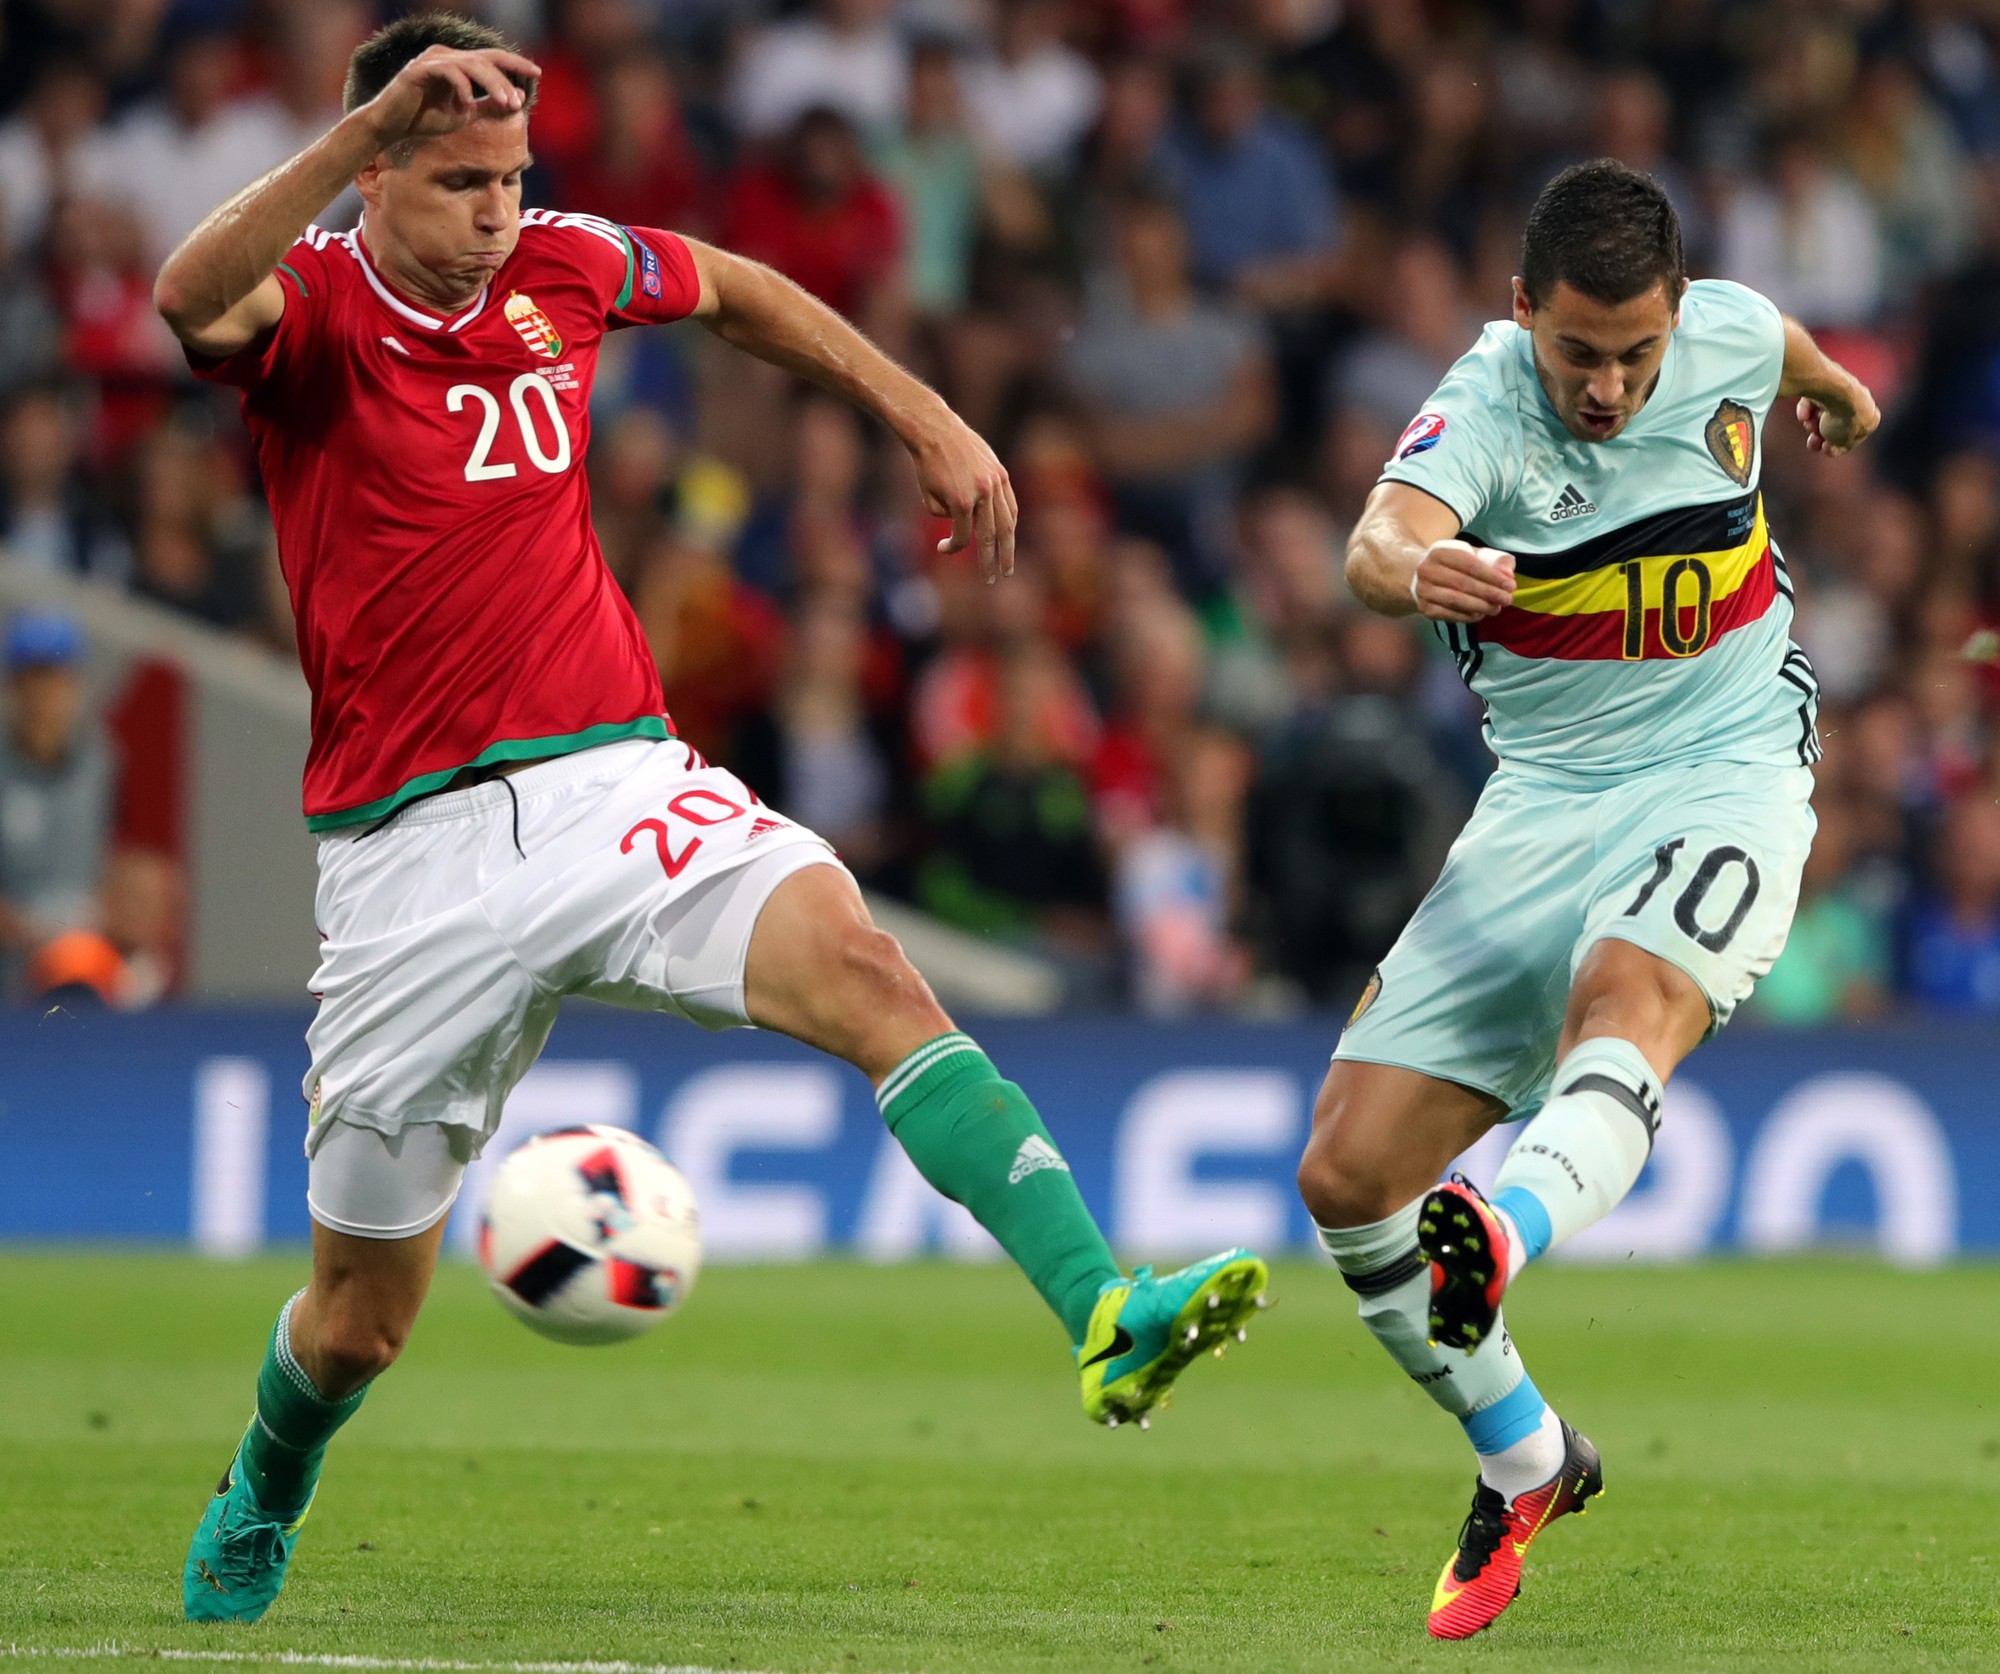 Hiệu suất của Hazard tại EURO 2016 là bước đột phá so với tại Chelsea mùa vừa qua